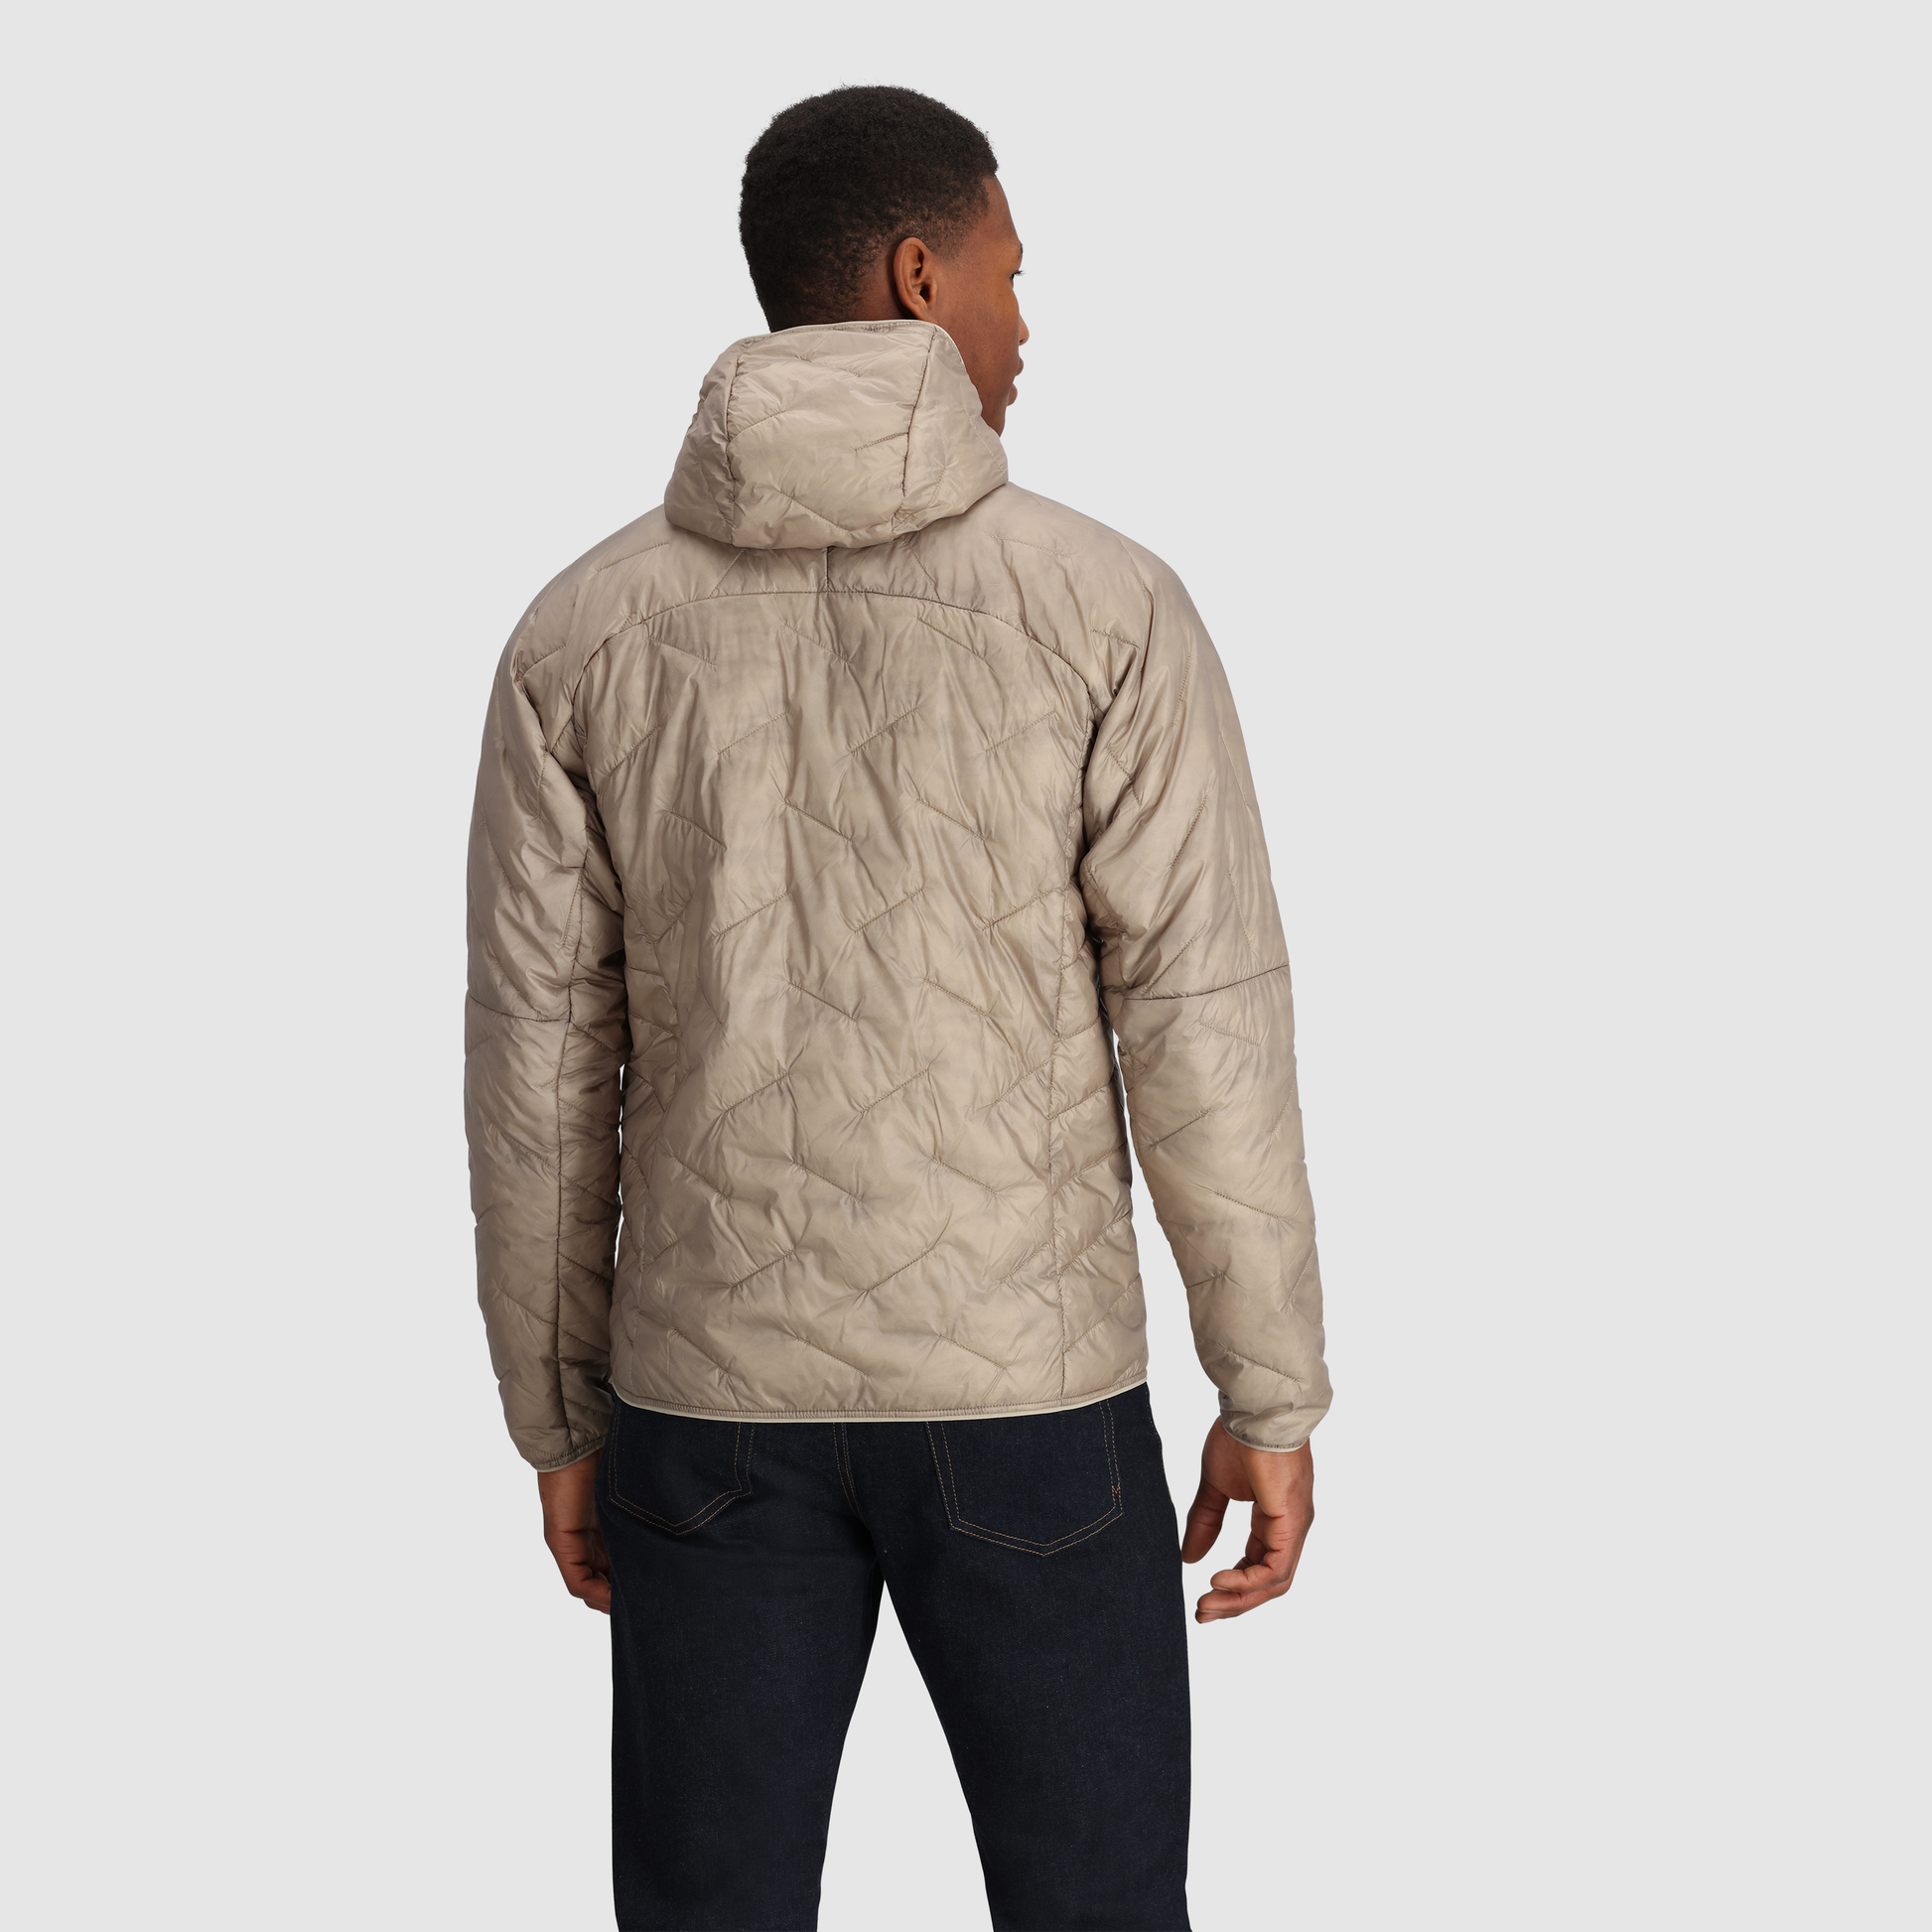 Pull Corteiz  Athletic jacket, Hooded jacket, Athletic jacket with hood